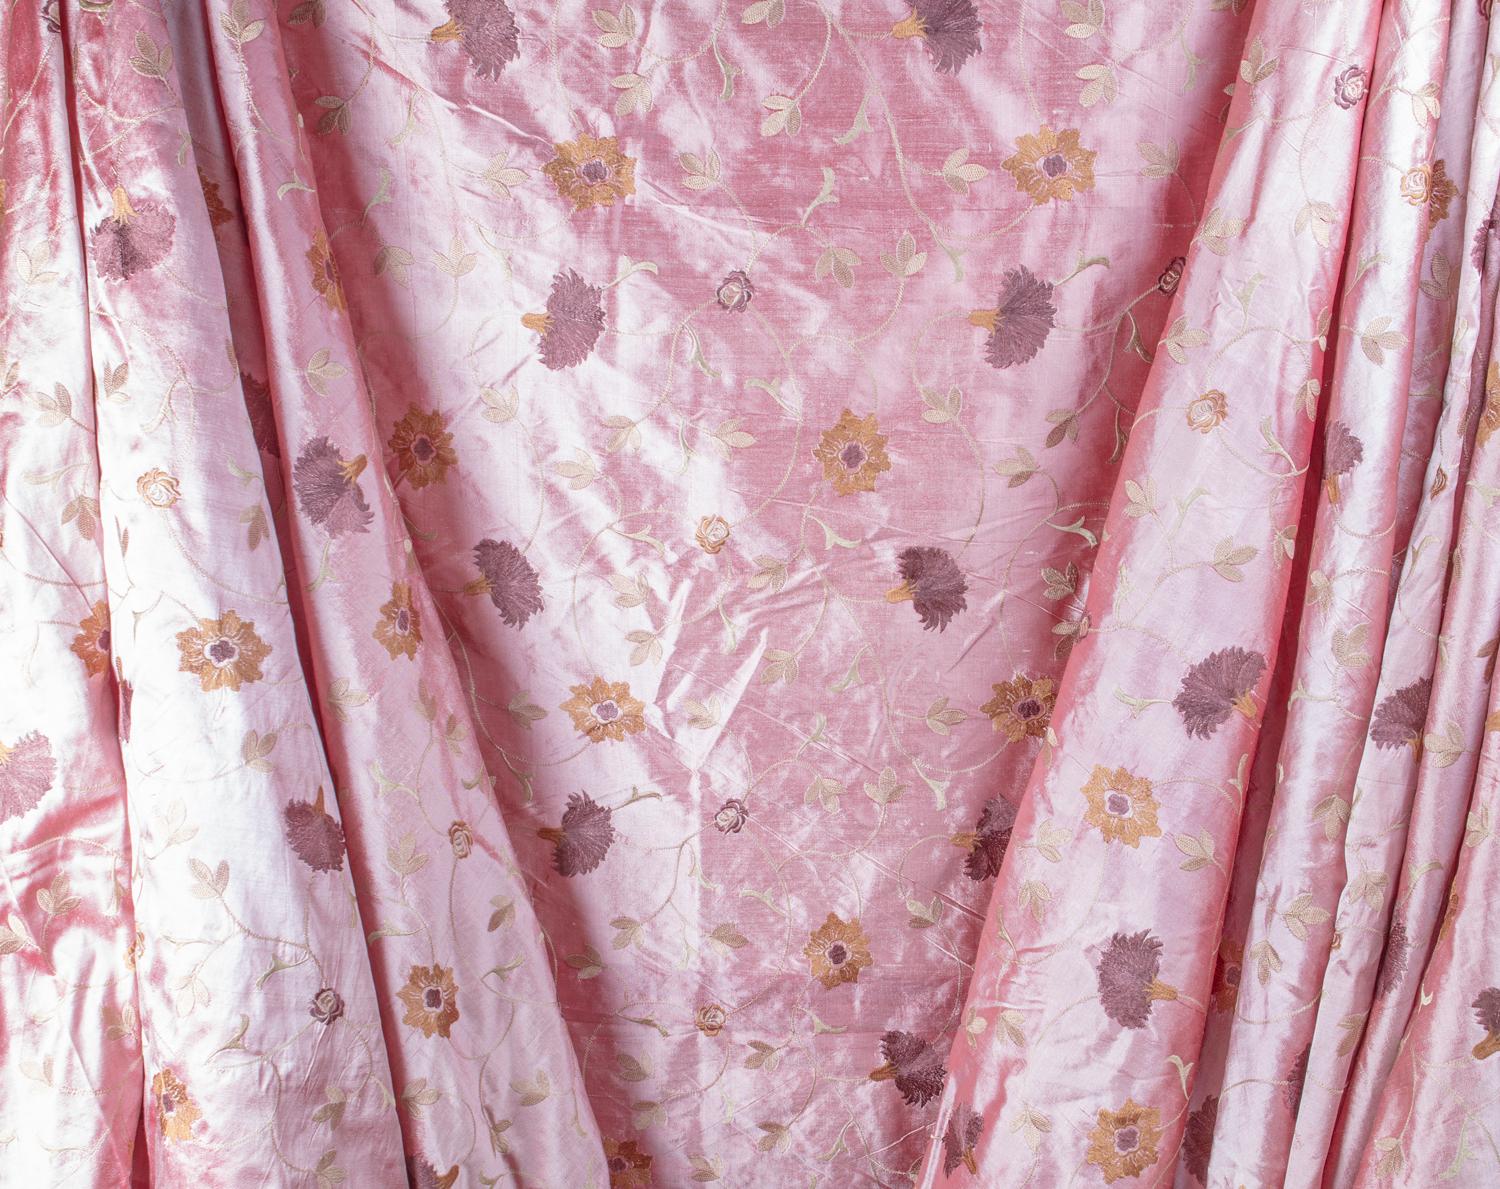 Magnifique tissu Dupioni en soie brute de couleur rose poussiéreux, avec une broderie complexe au point de chaînette, guidée à la main, d'un motif floral safran, grenat, améthyste et d'un treillis de cèdres. 100% soie brute tissée et teintée à la